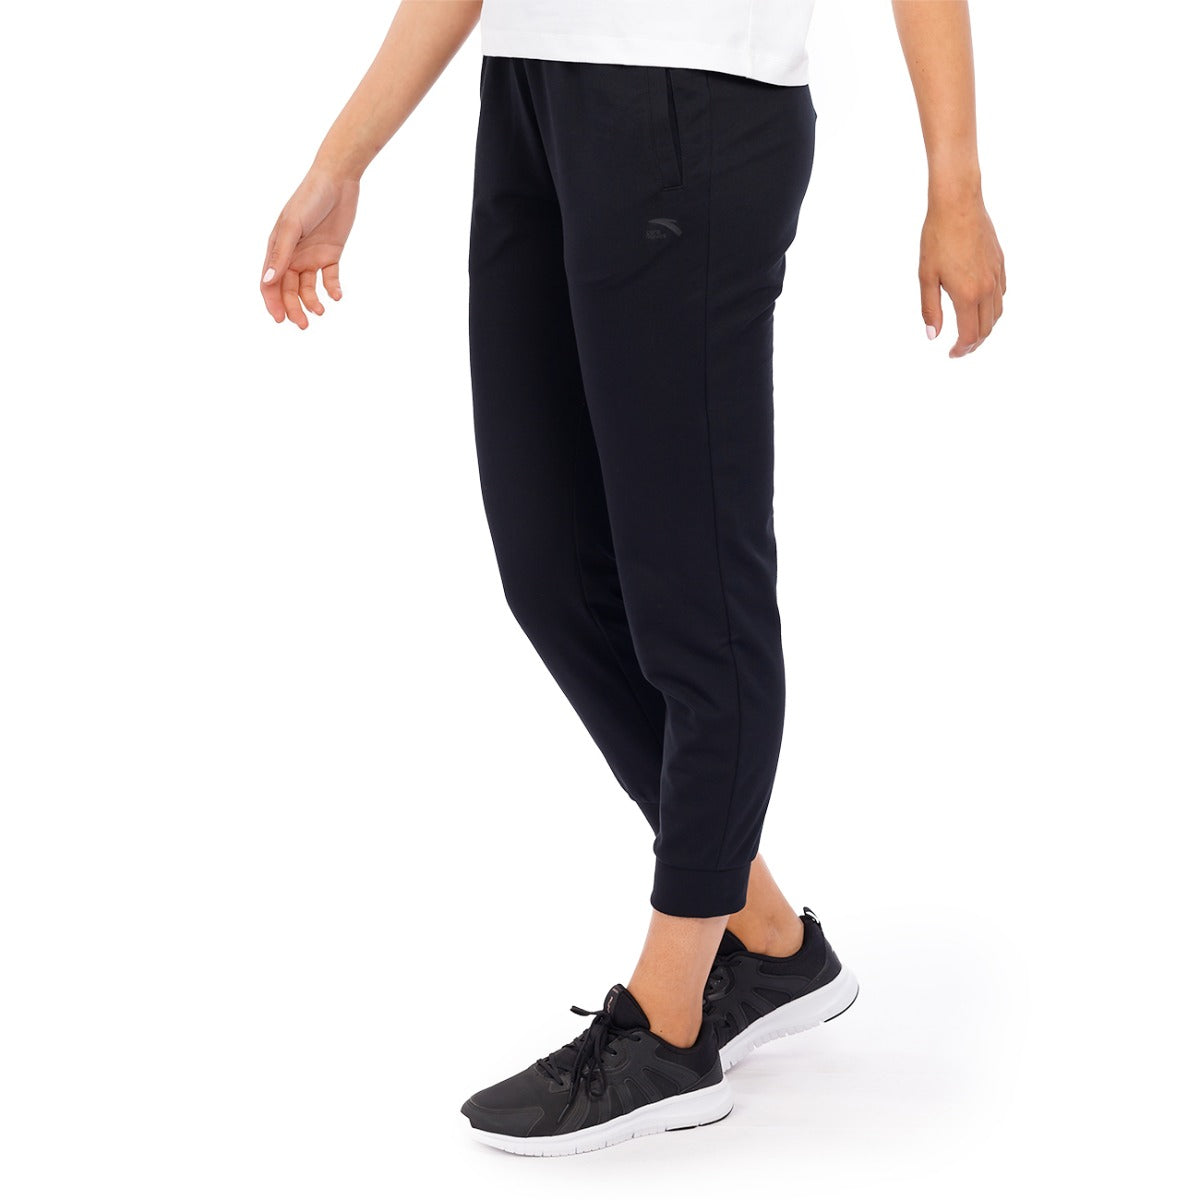 Anta Sweatpants For Women, Black